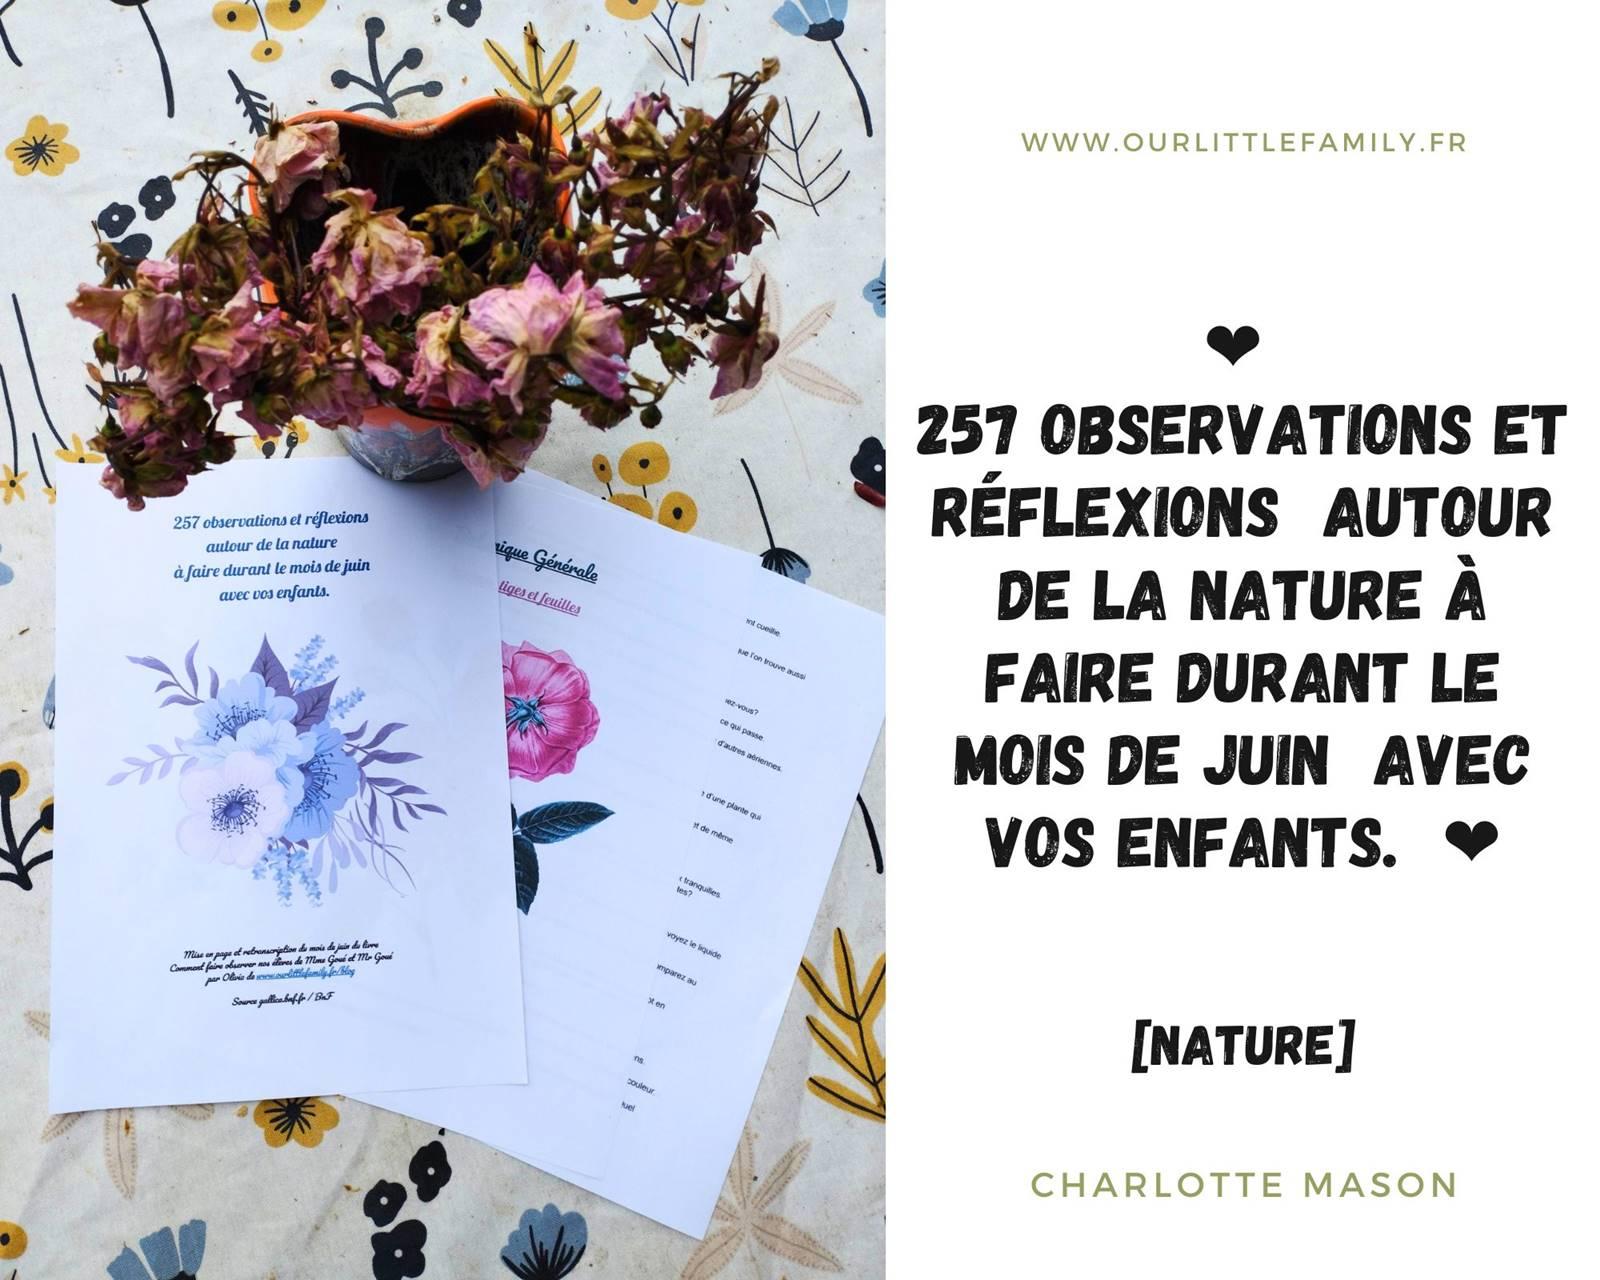 257 observations et reflexions autour de la nature a faire durant le mois de juin avec vos enfants